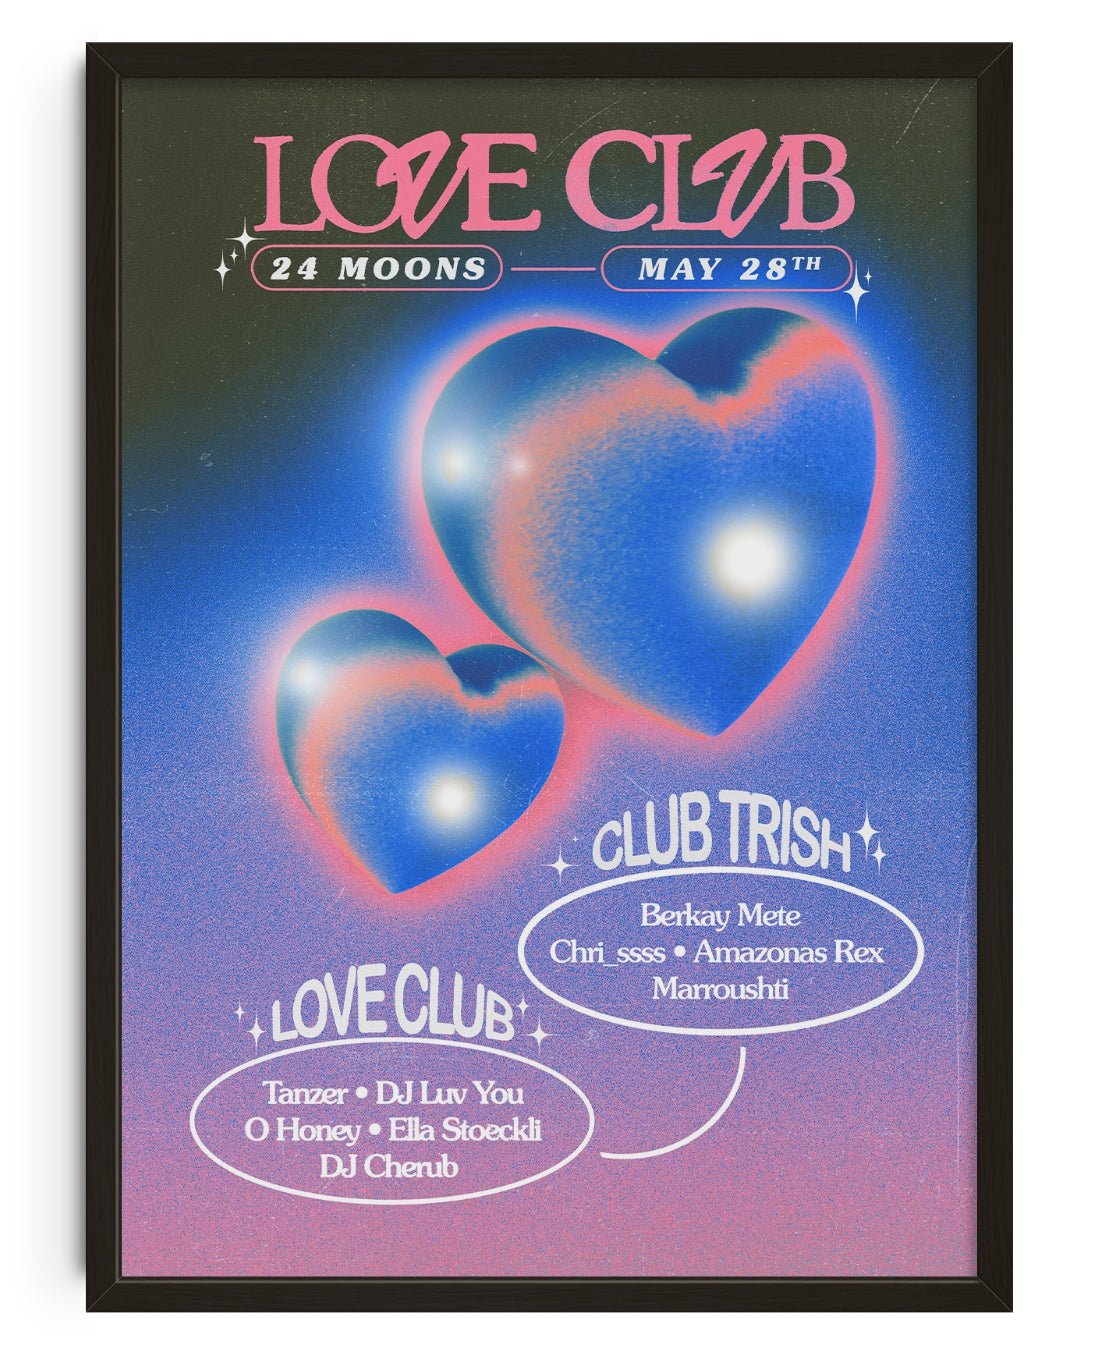 Love Club at 24 Moons